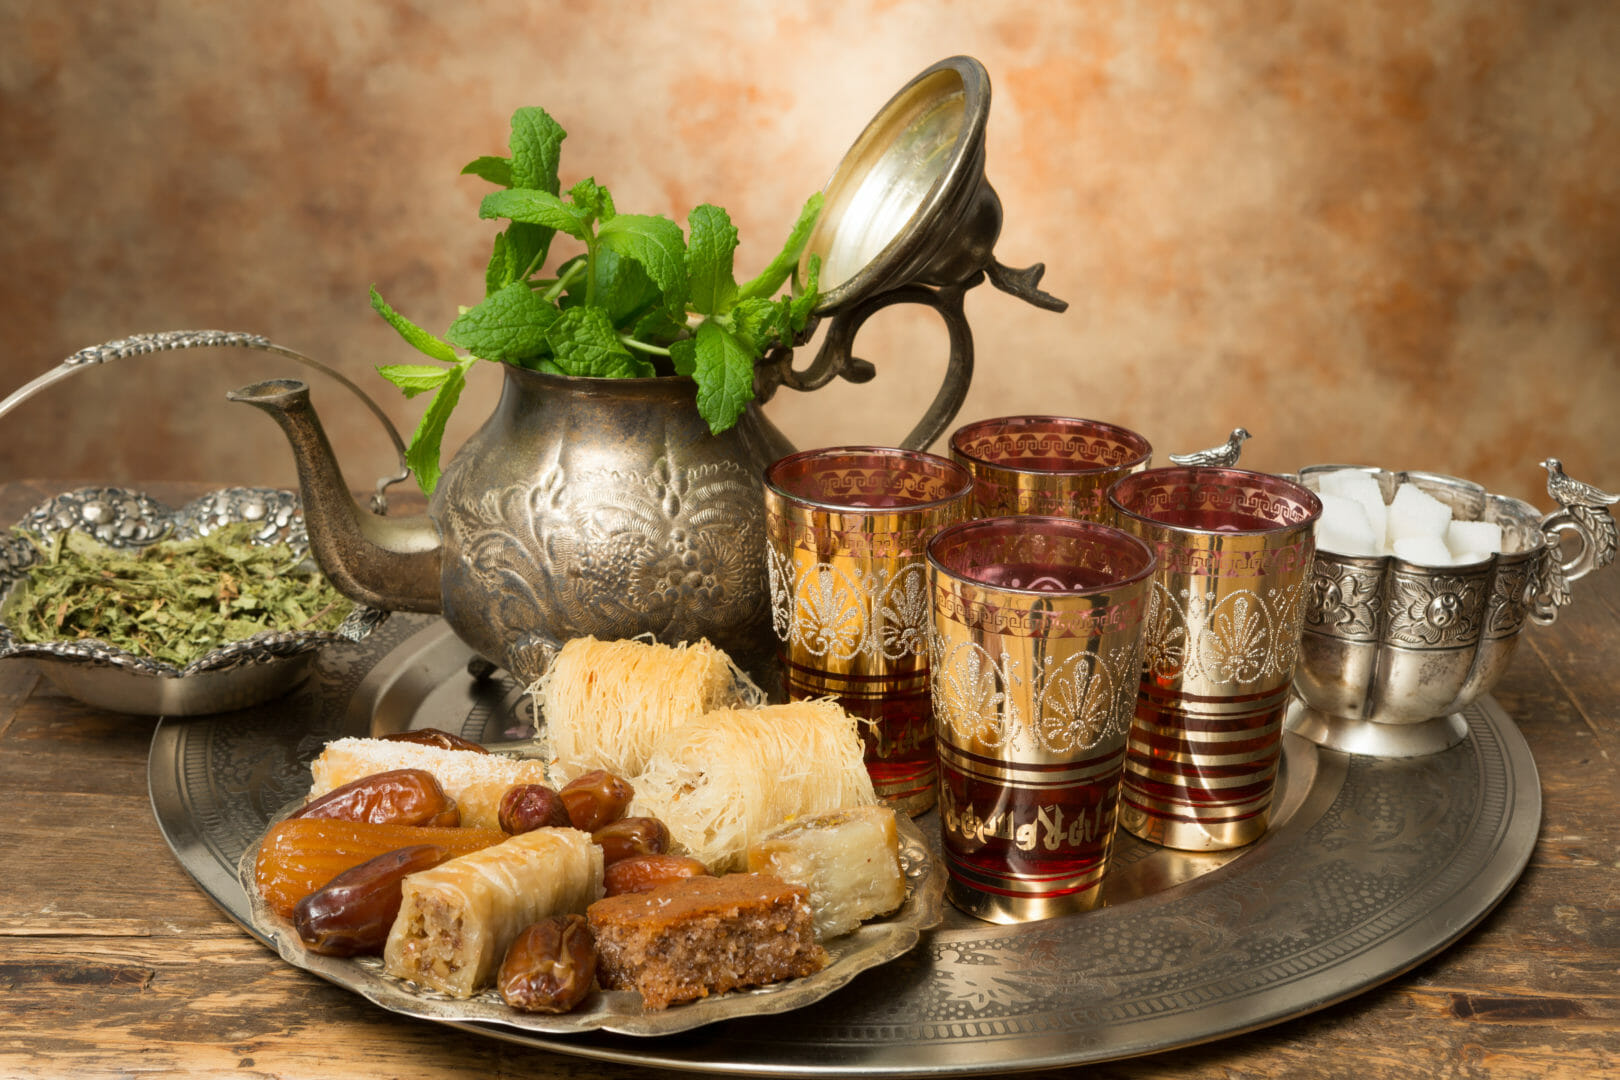 Marokkanischer Tee und Honigkekse während einer Reise nach Marokko